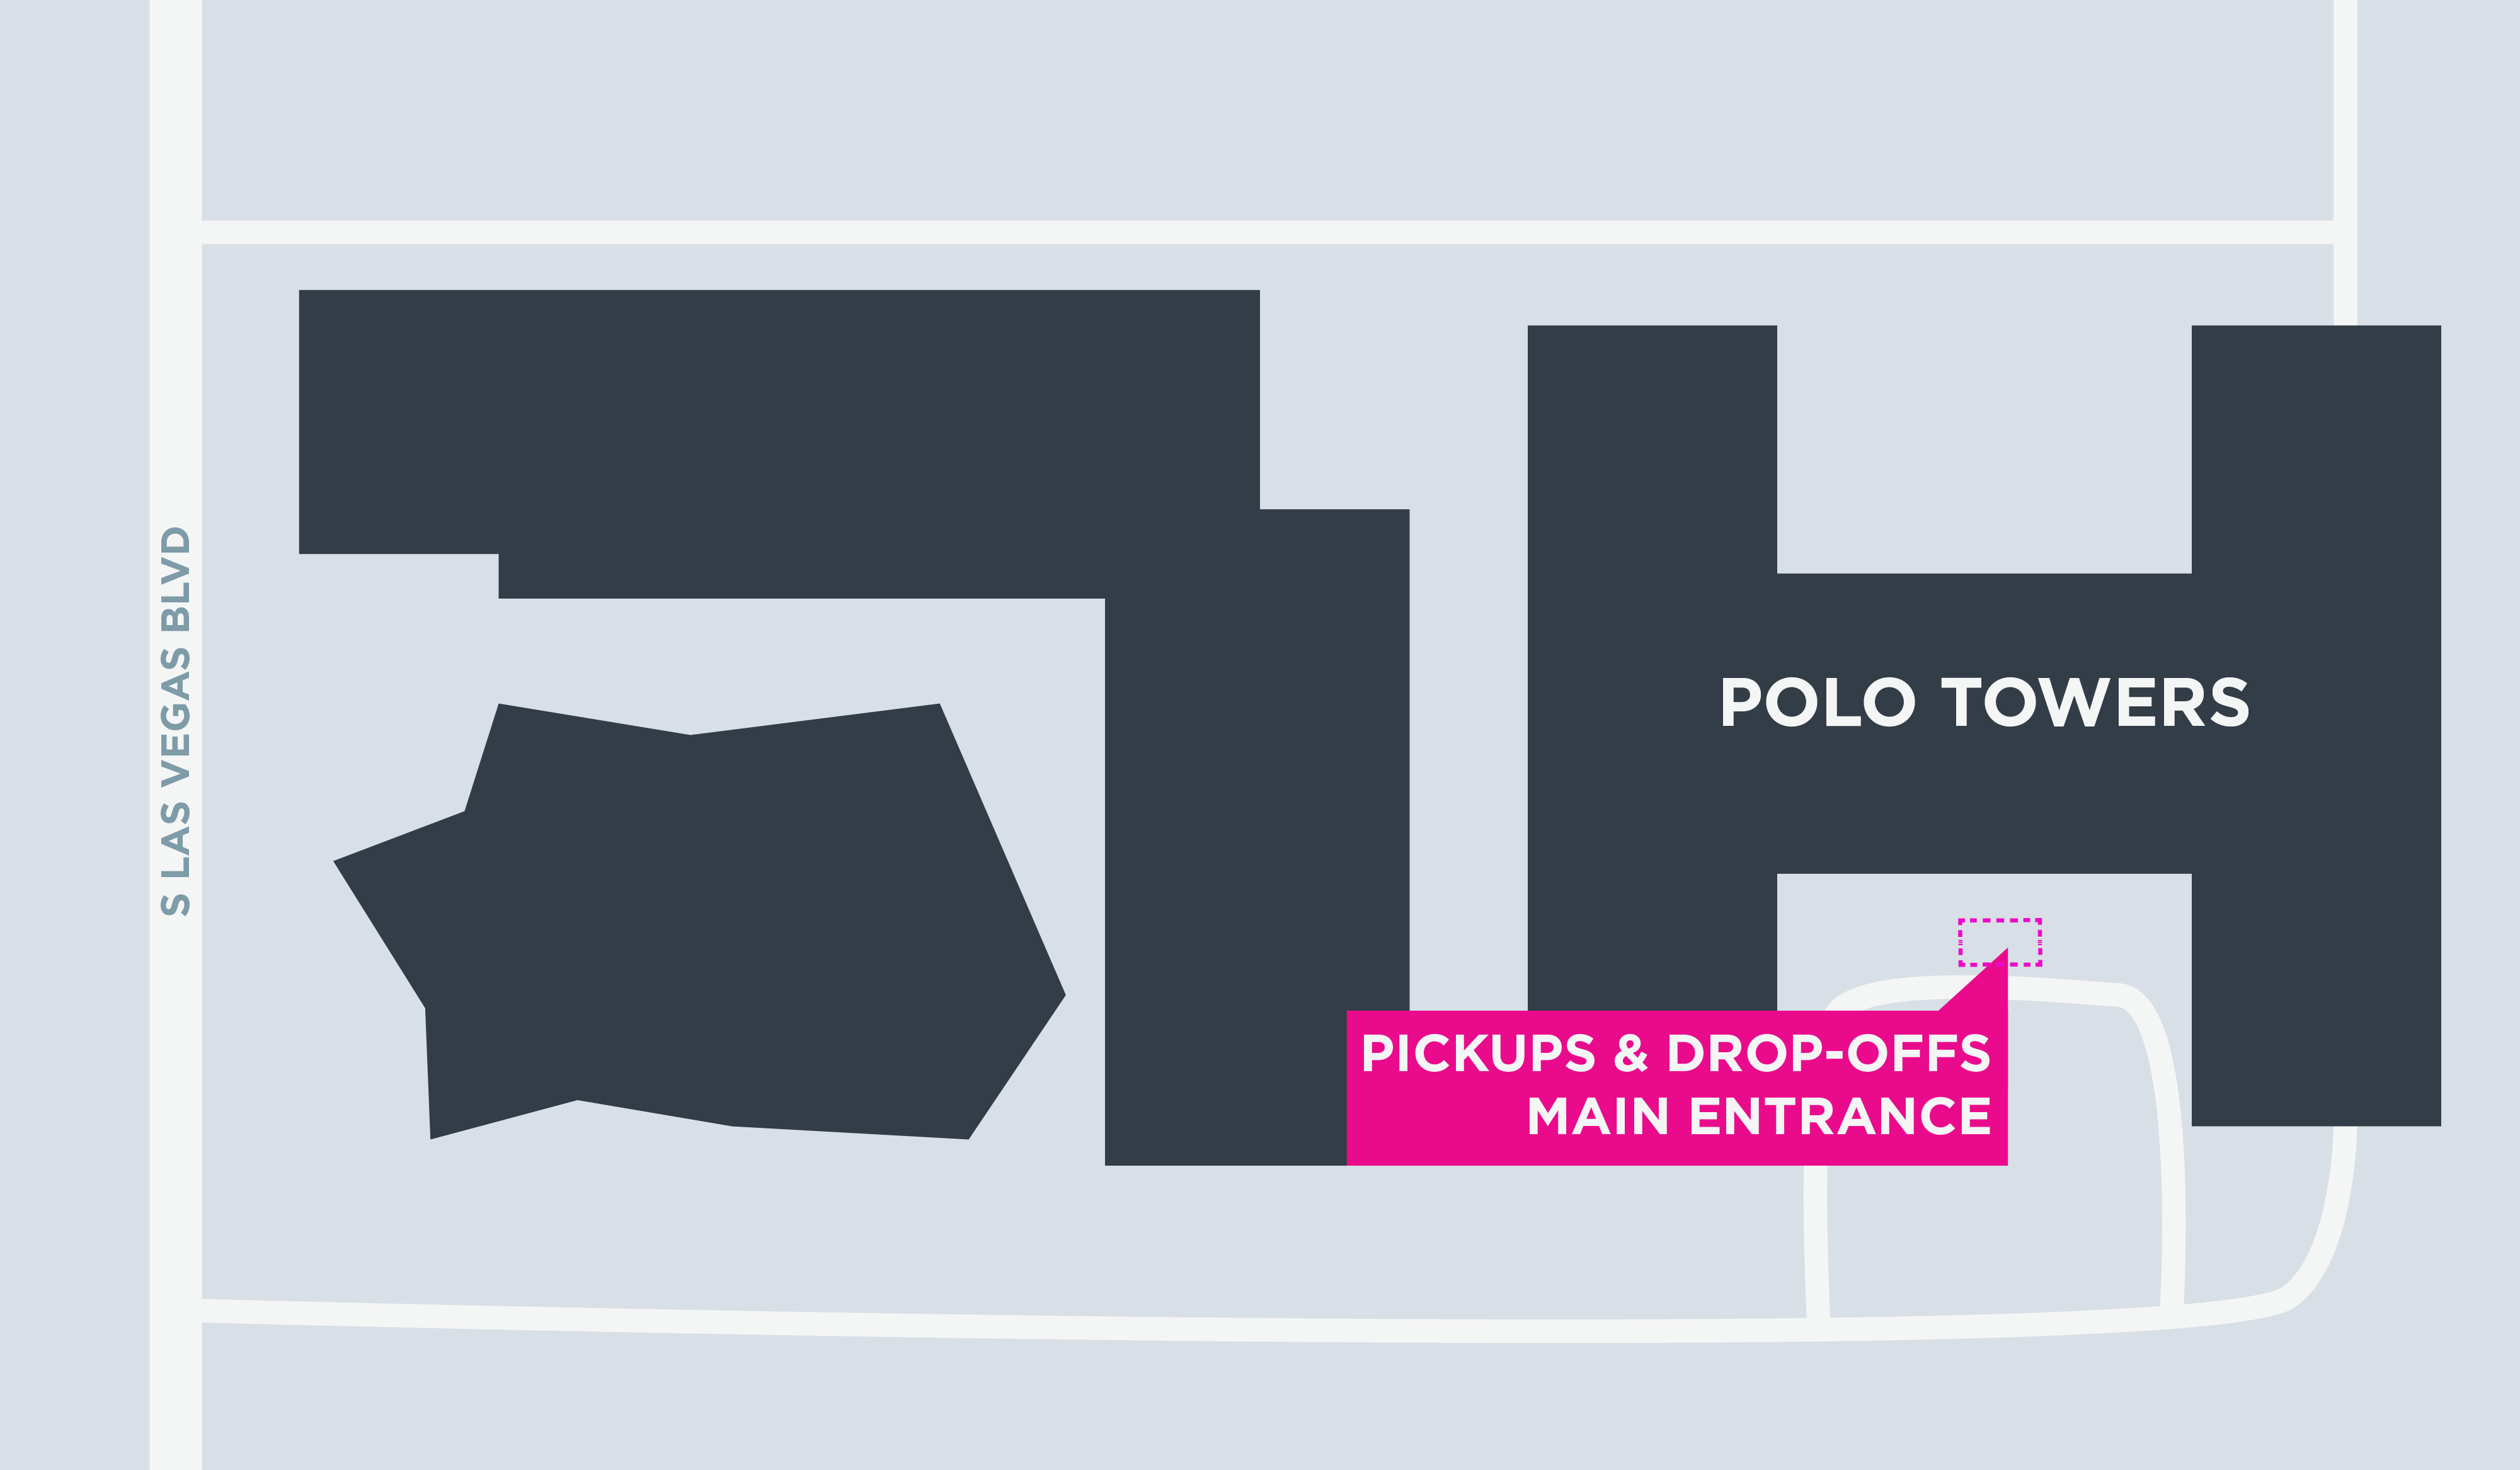 Mapa de las áreas para recoger y dejar pasajeros en Polo Towers en Las Vegas.